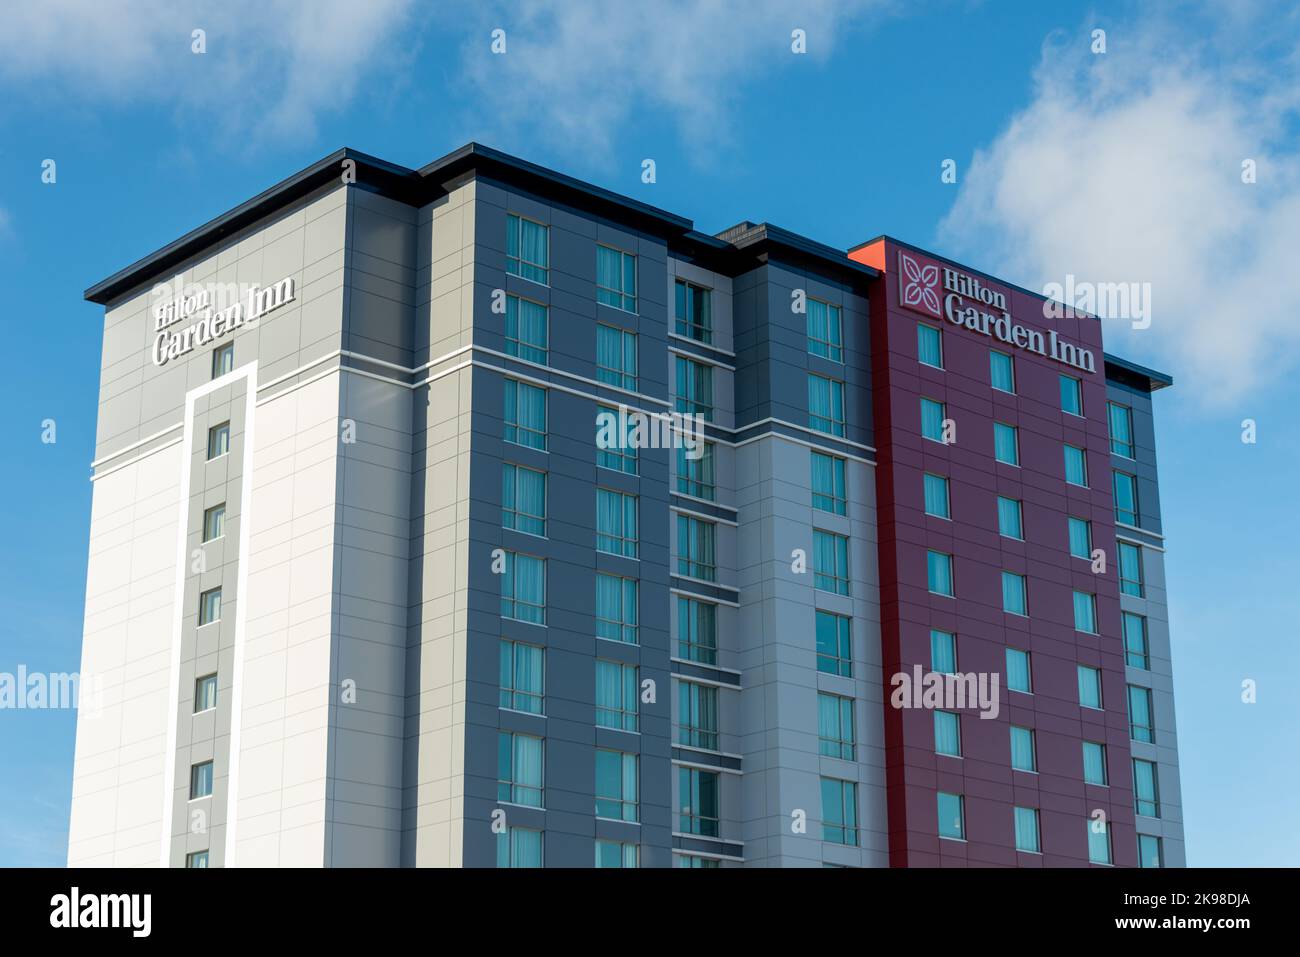 Hilton Garden Inn Hotel, ein neu erbautes, hohes Gebäude mit Metall-Verbundpaneelen in Grau, Rot und Hellgrau vor einem hellblauen Himmel und Klo Stockfoto